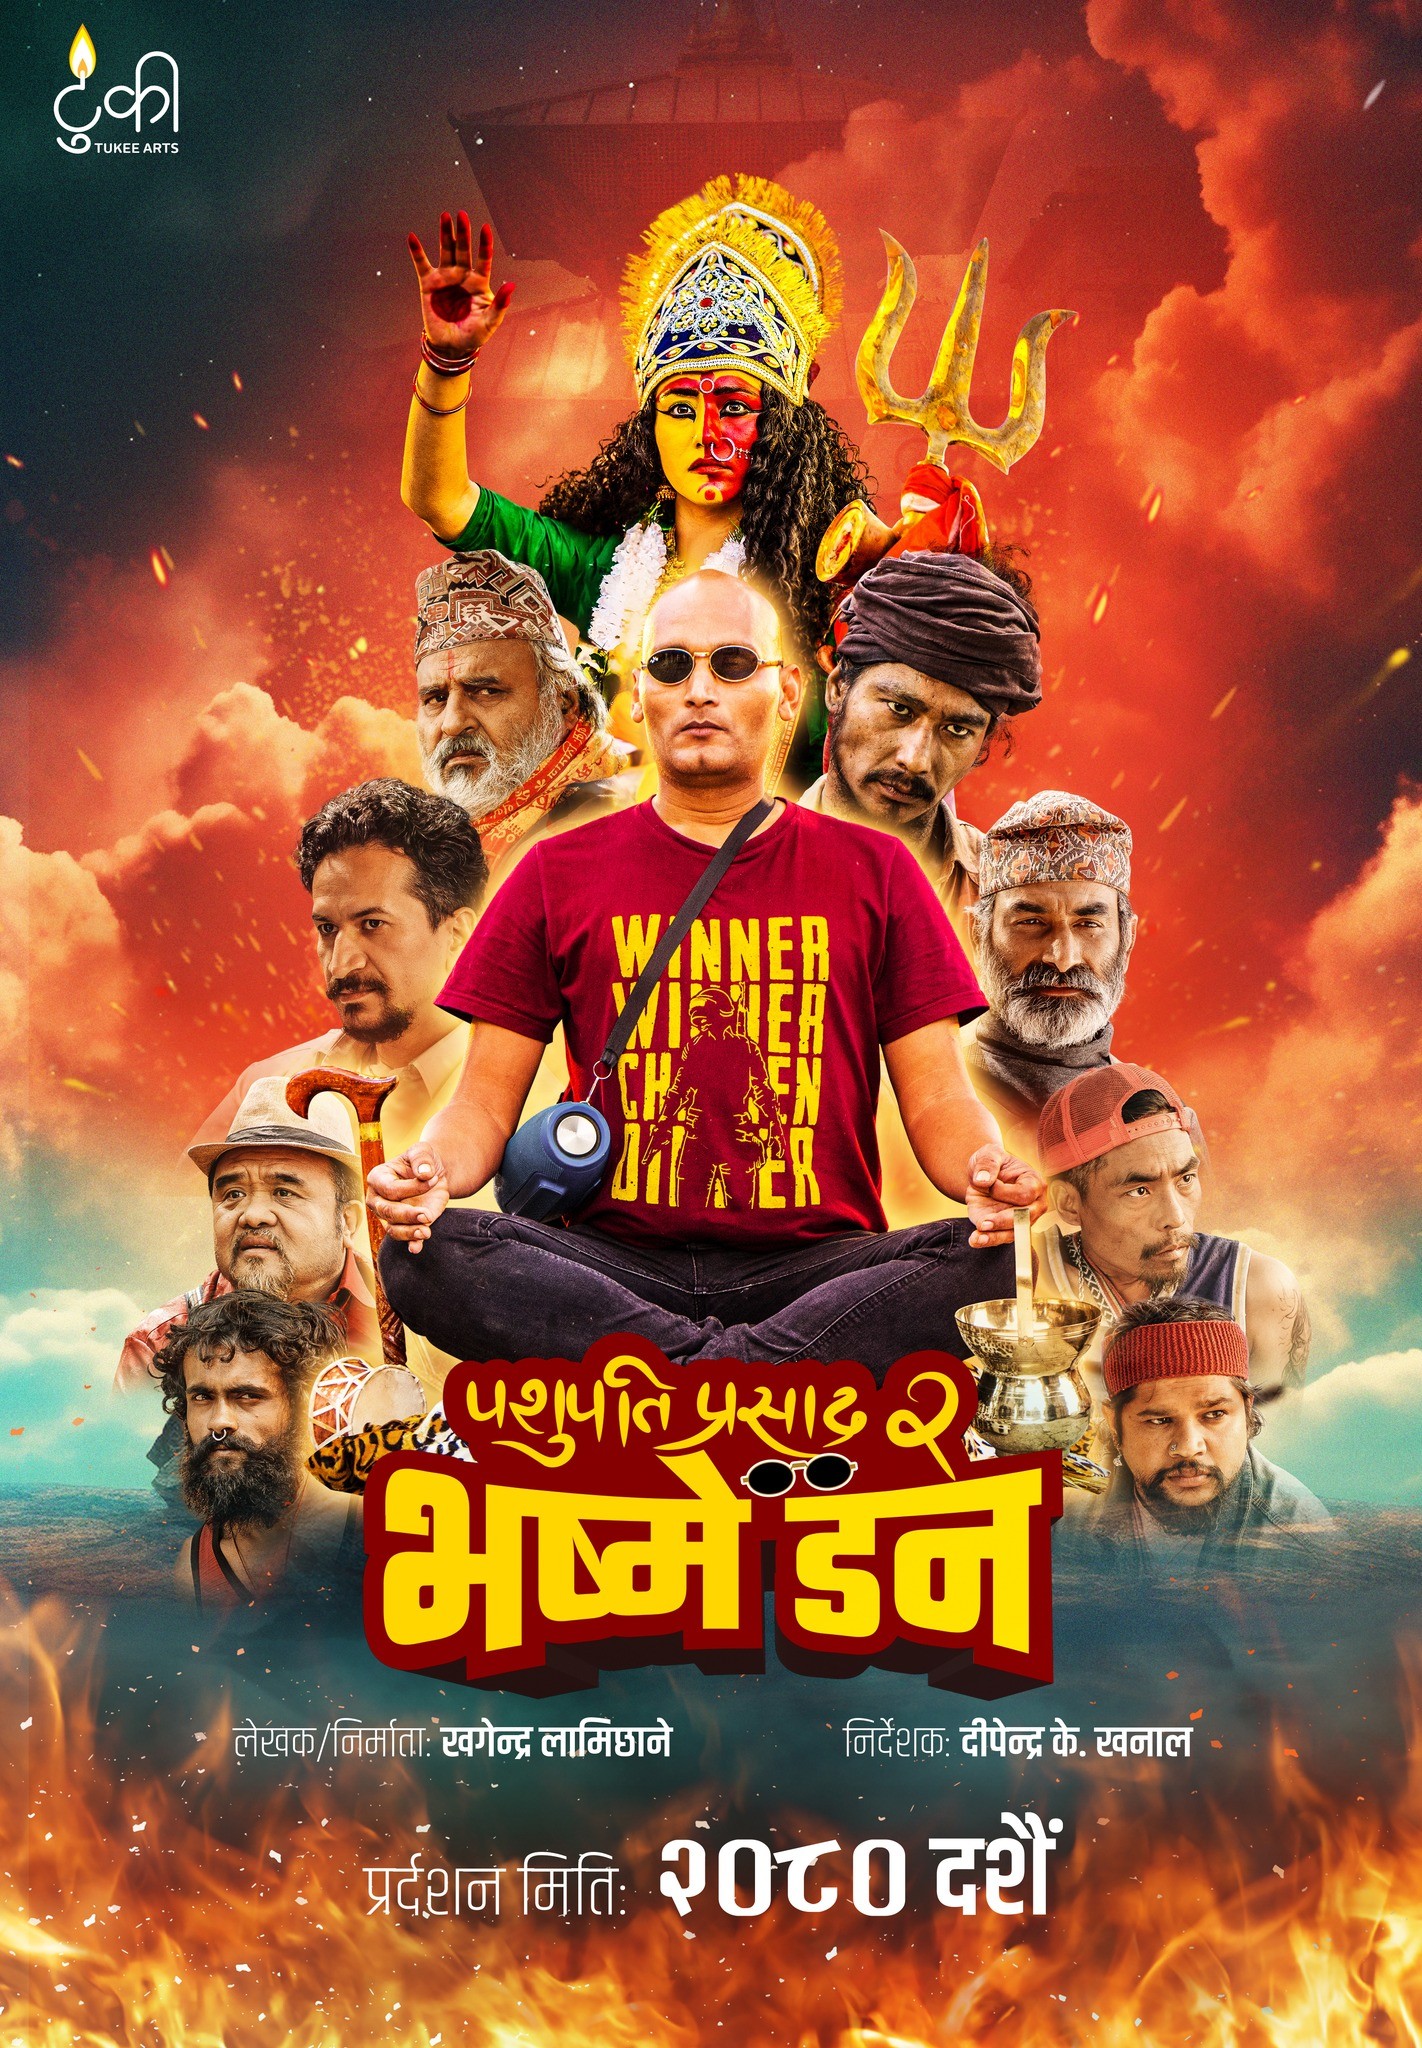 Pashupati Prasad 2 (Bhasme Don) Nepali Movie